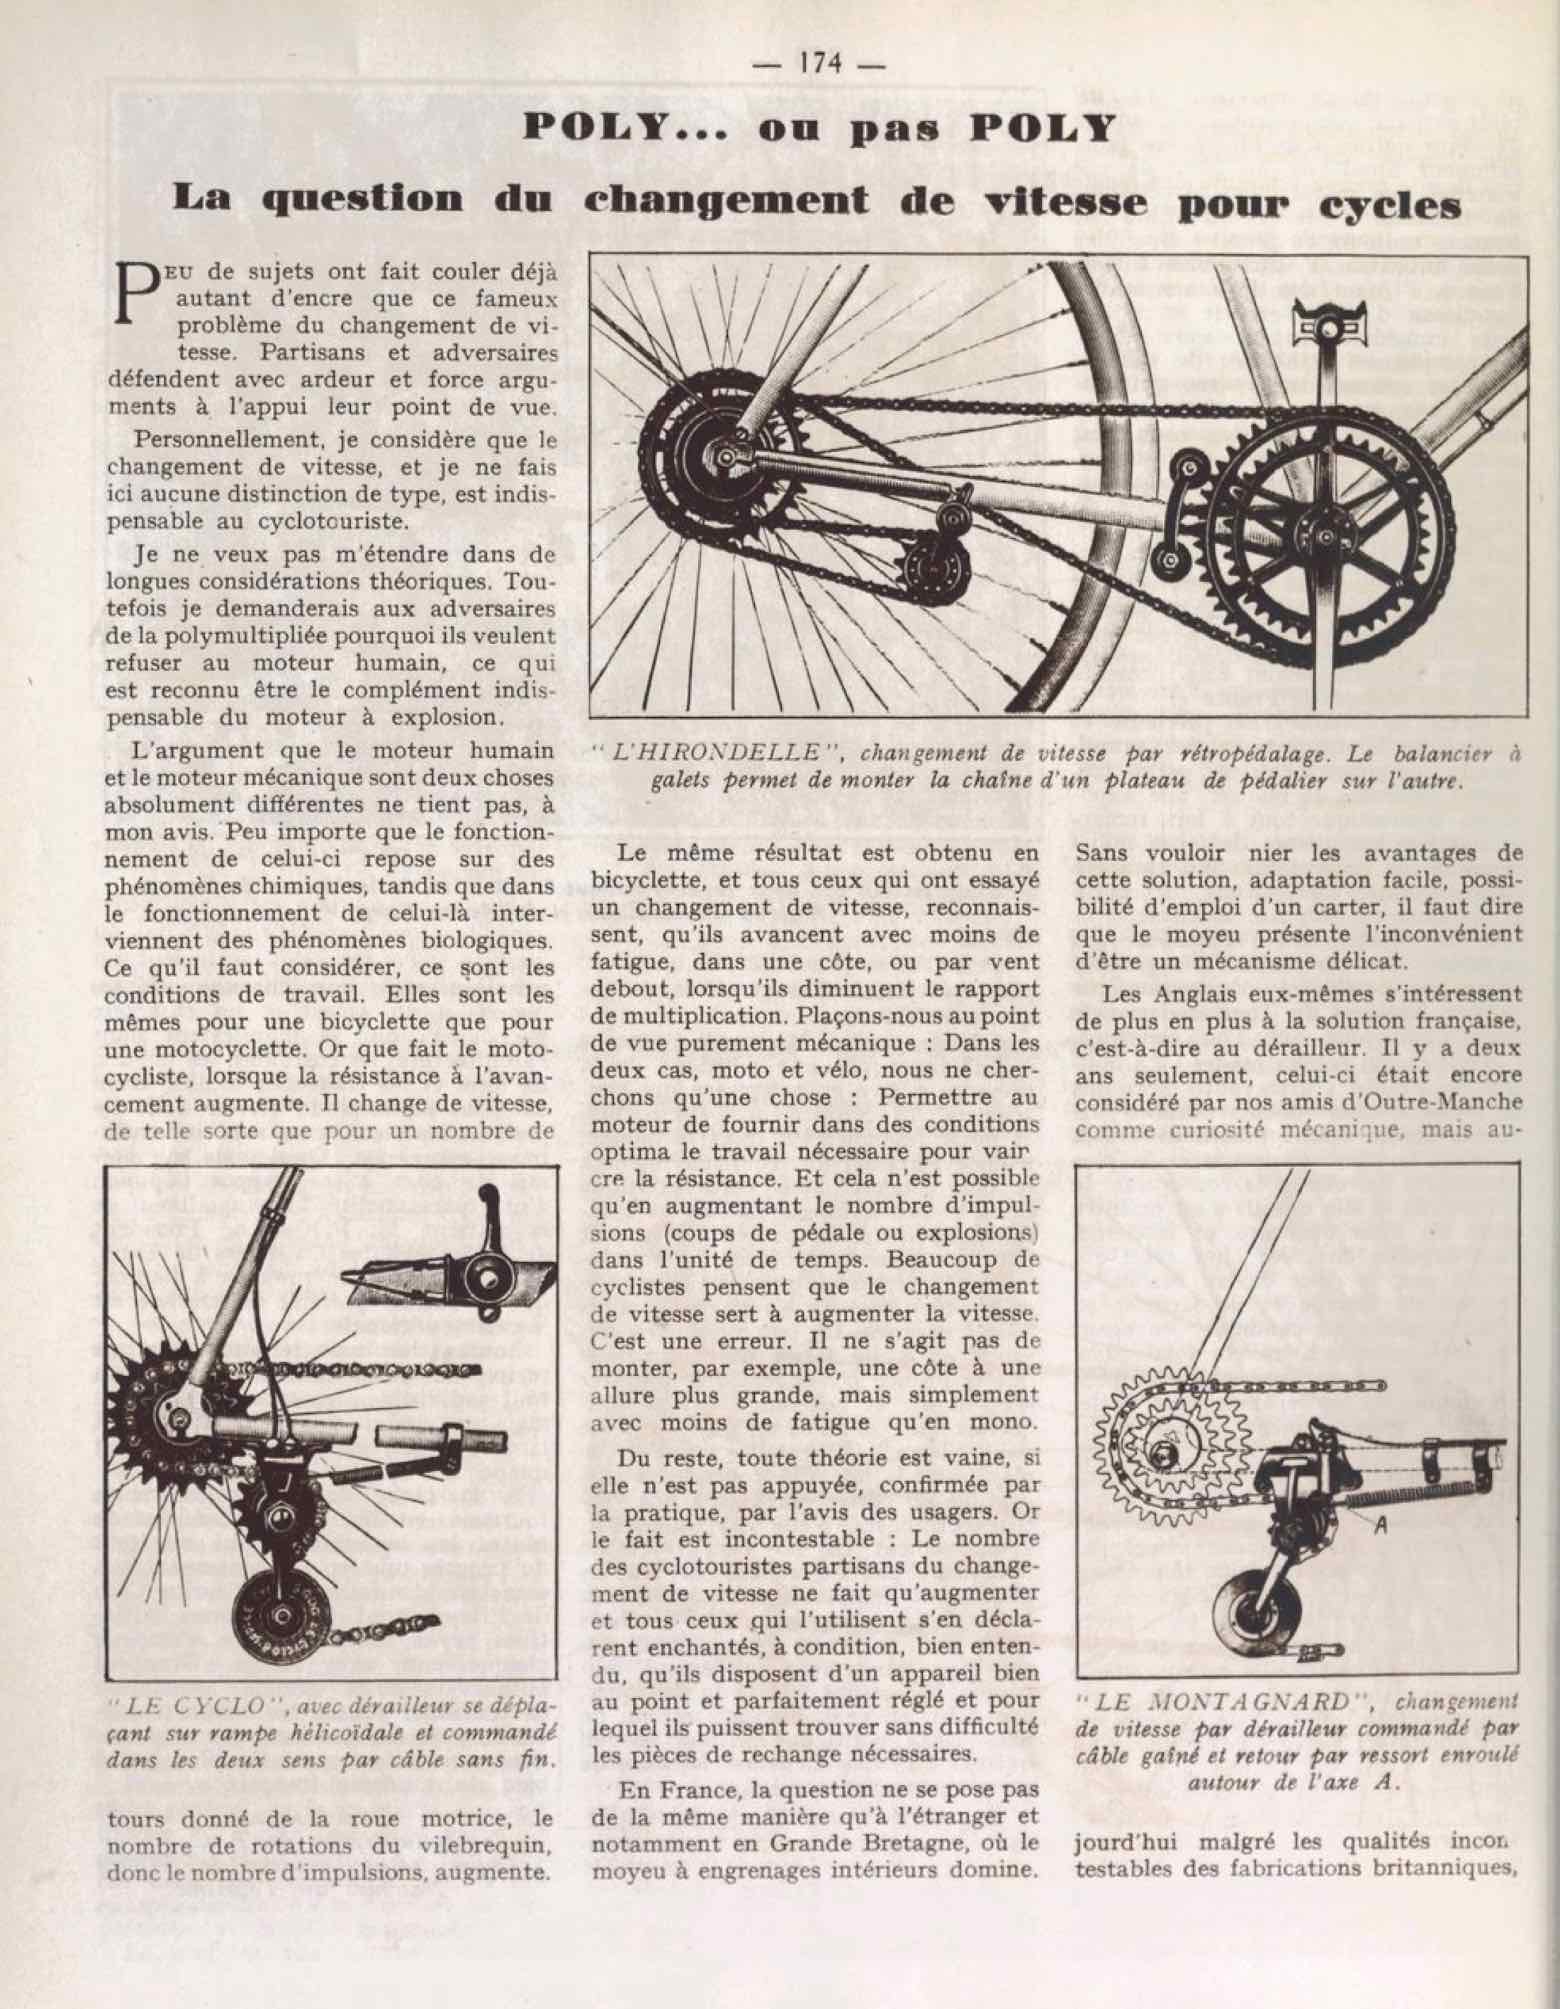 T.C.F. Revue Mensuelle June 1930 - Poly... ou pas Poly scan 1 main image